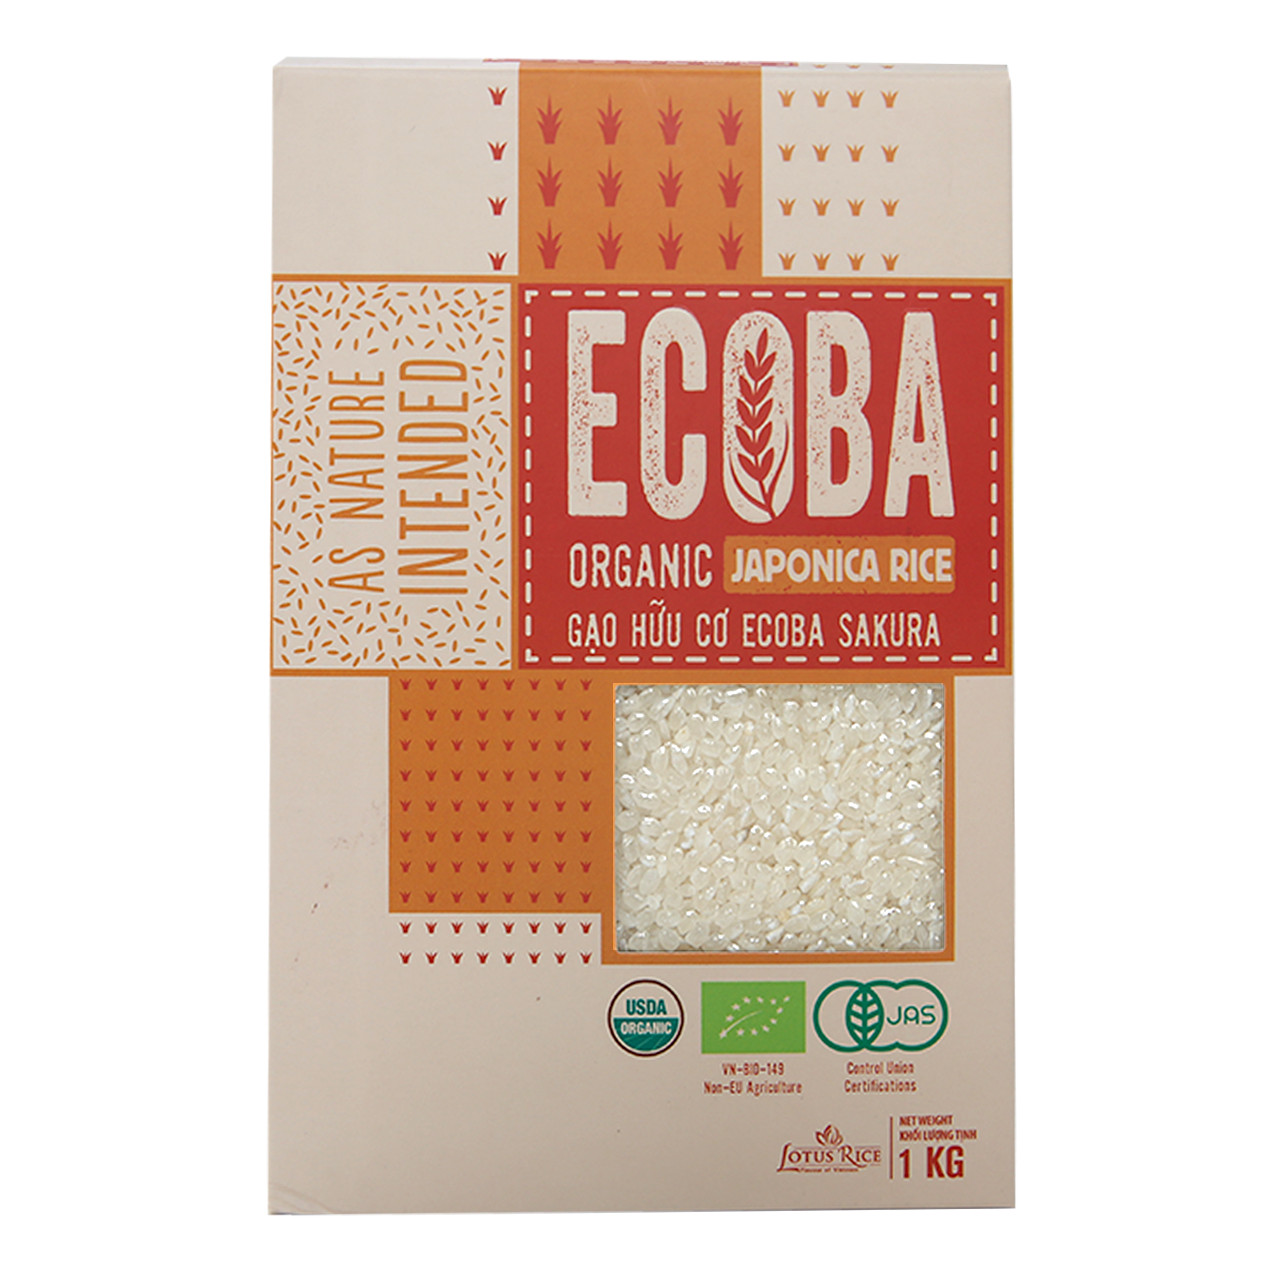 Combo 5 Gạo Nhật Hữu Cơ ECOBA SAKURA Ecoba Organic Japonica Rice An Toàn Sức Khoẻ, Giàu Dinh Dưỡng Túi 1Kg ORIMART